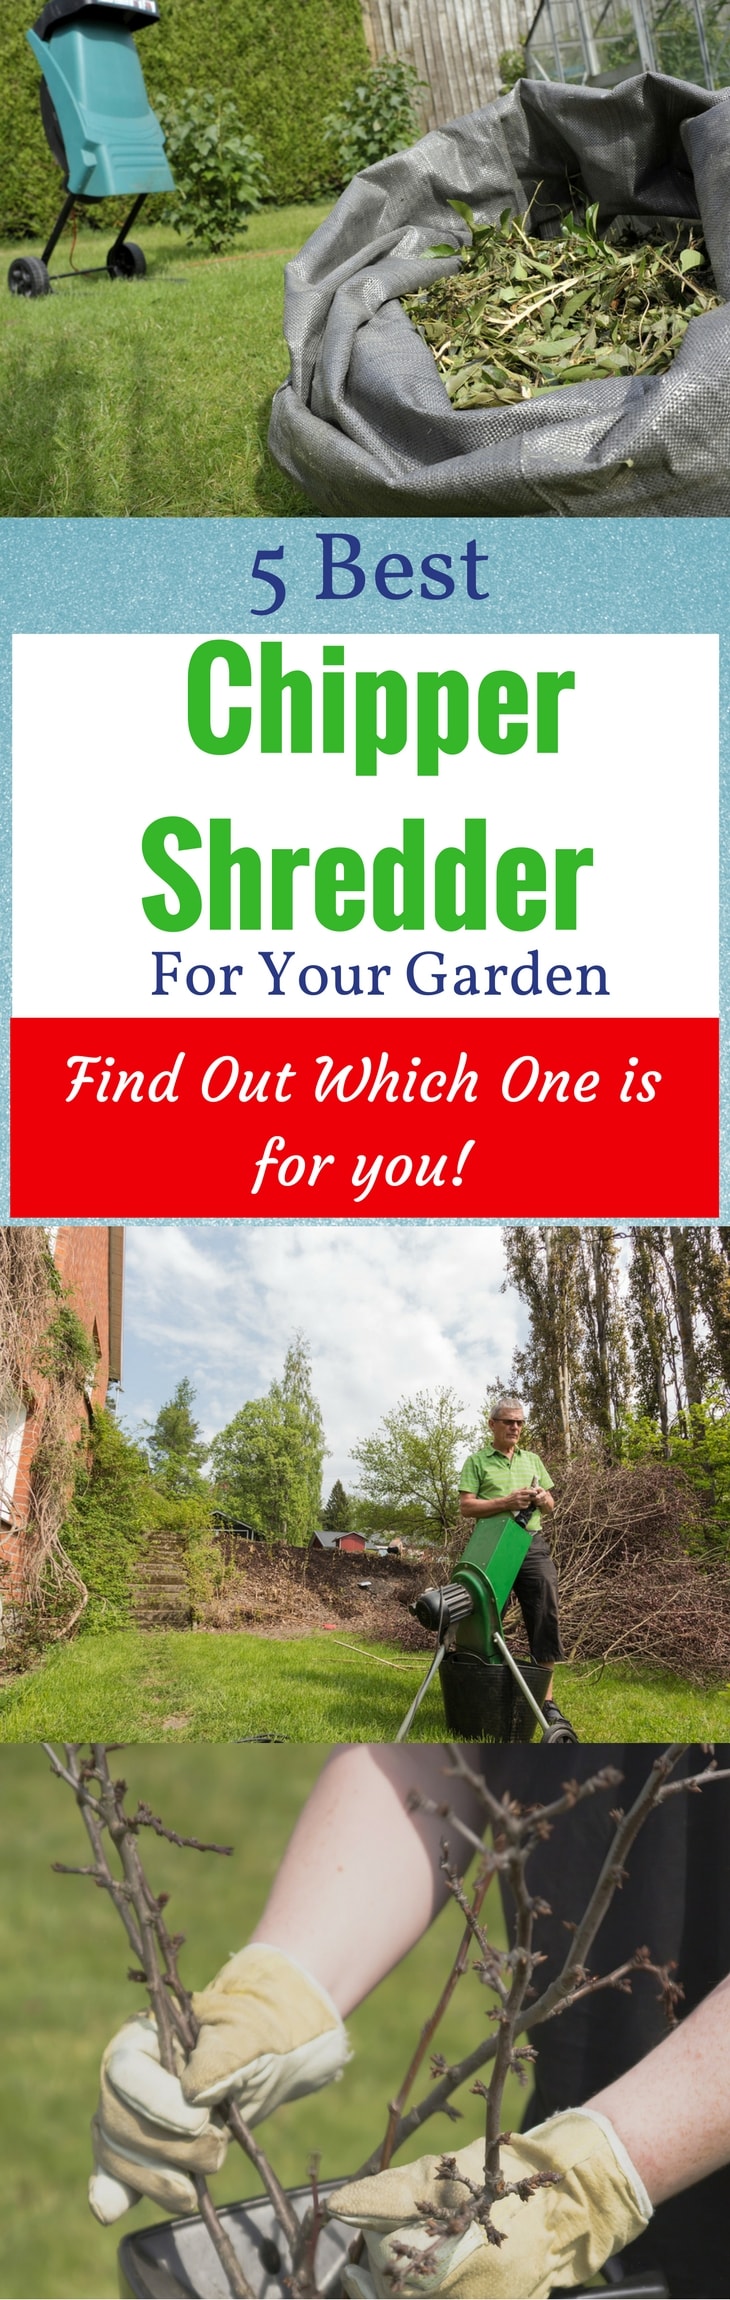 5 Best Chipper Shredder